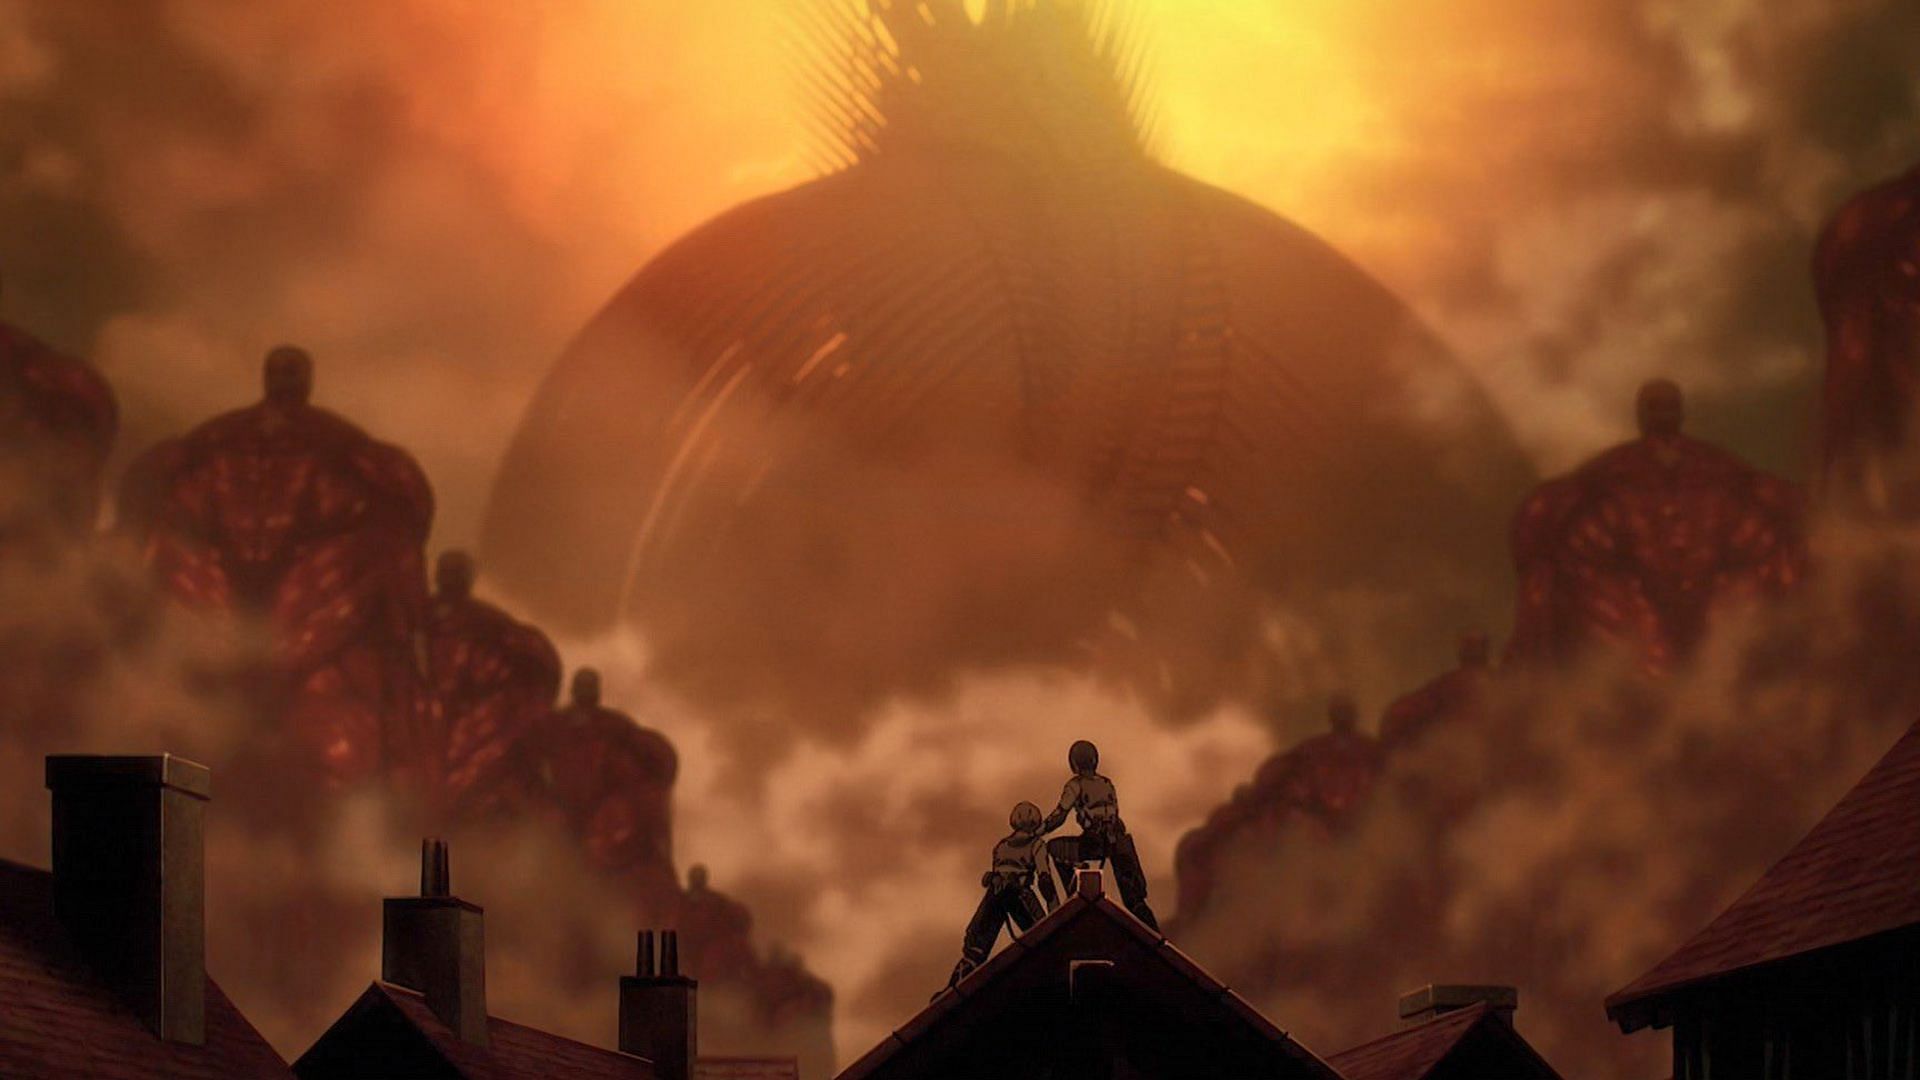 Attack on Titan Episode 80: Eren begins the Rumbling